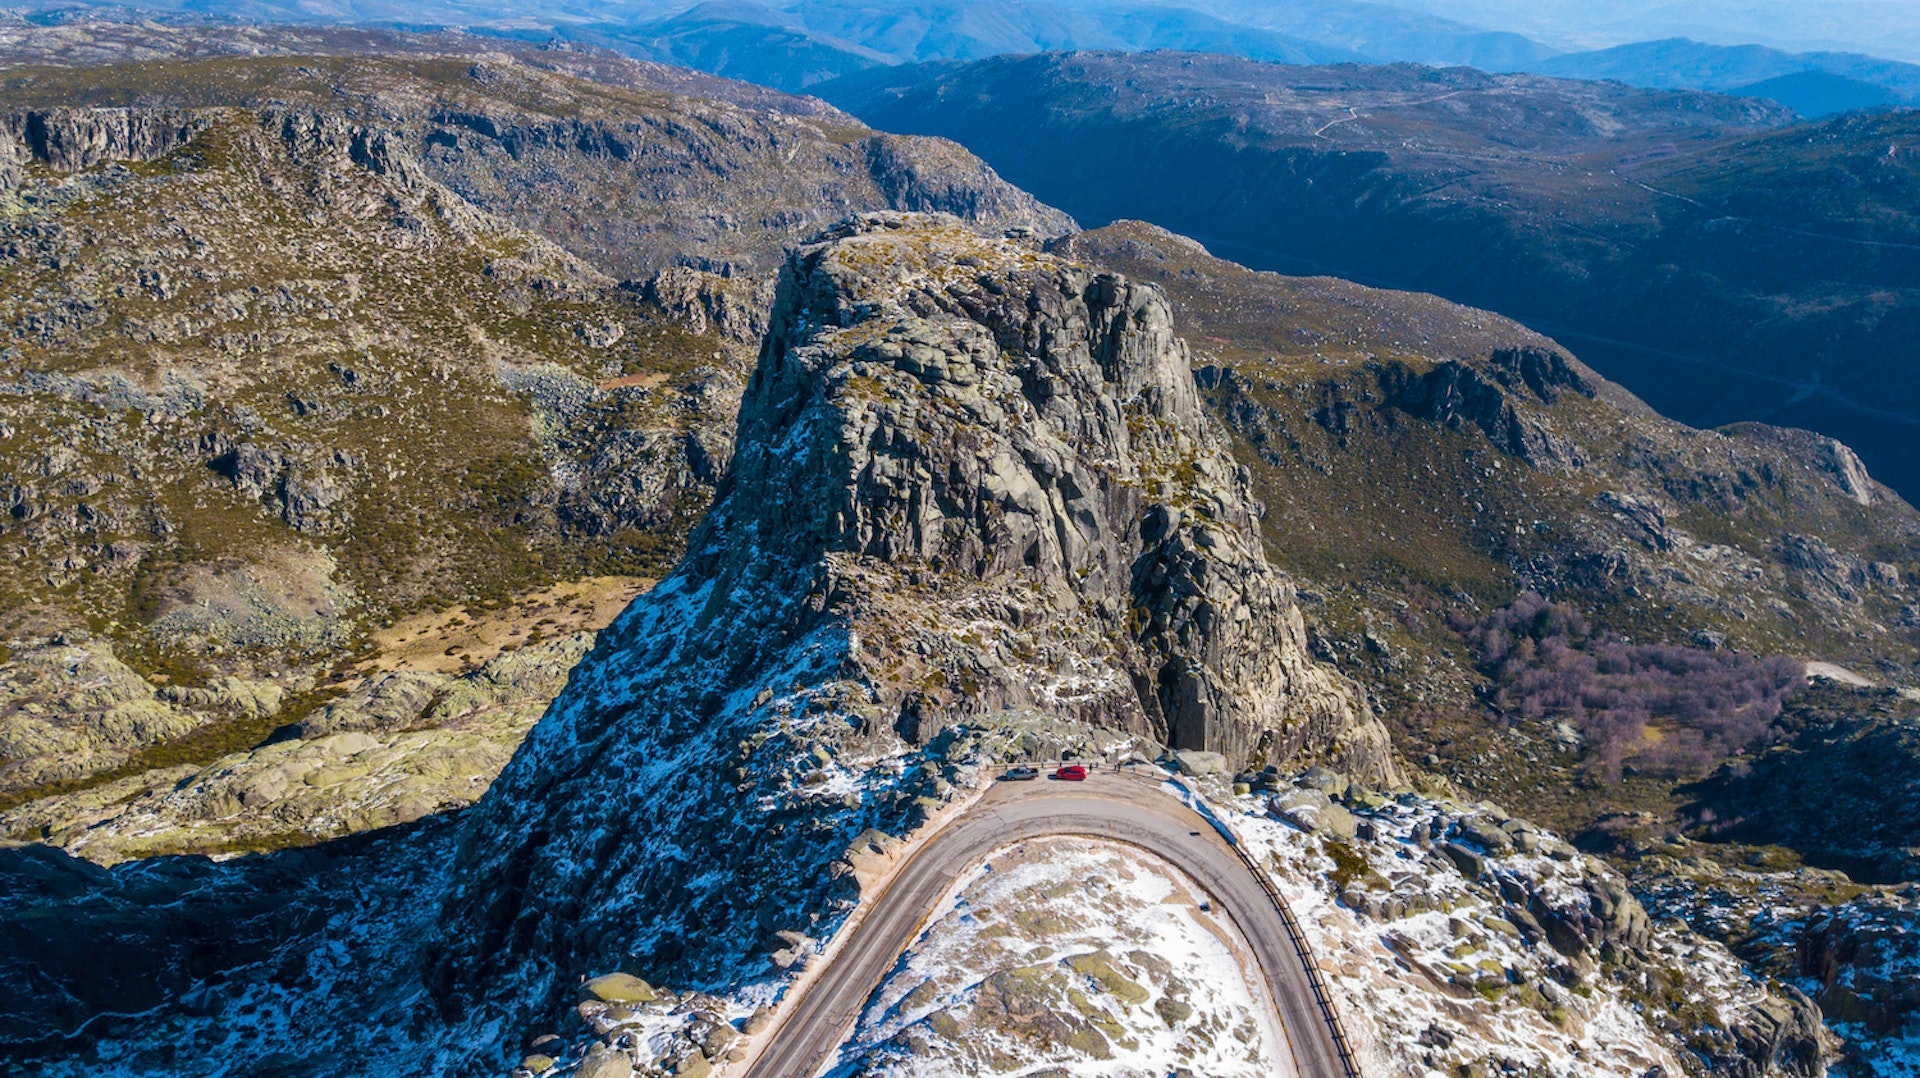 Passagem de montanha rochosa na Serra da Estrela com carros estacionados na beira da estrada